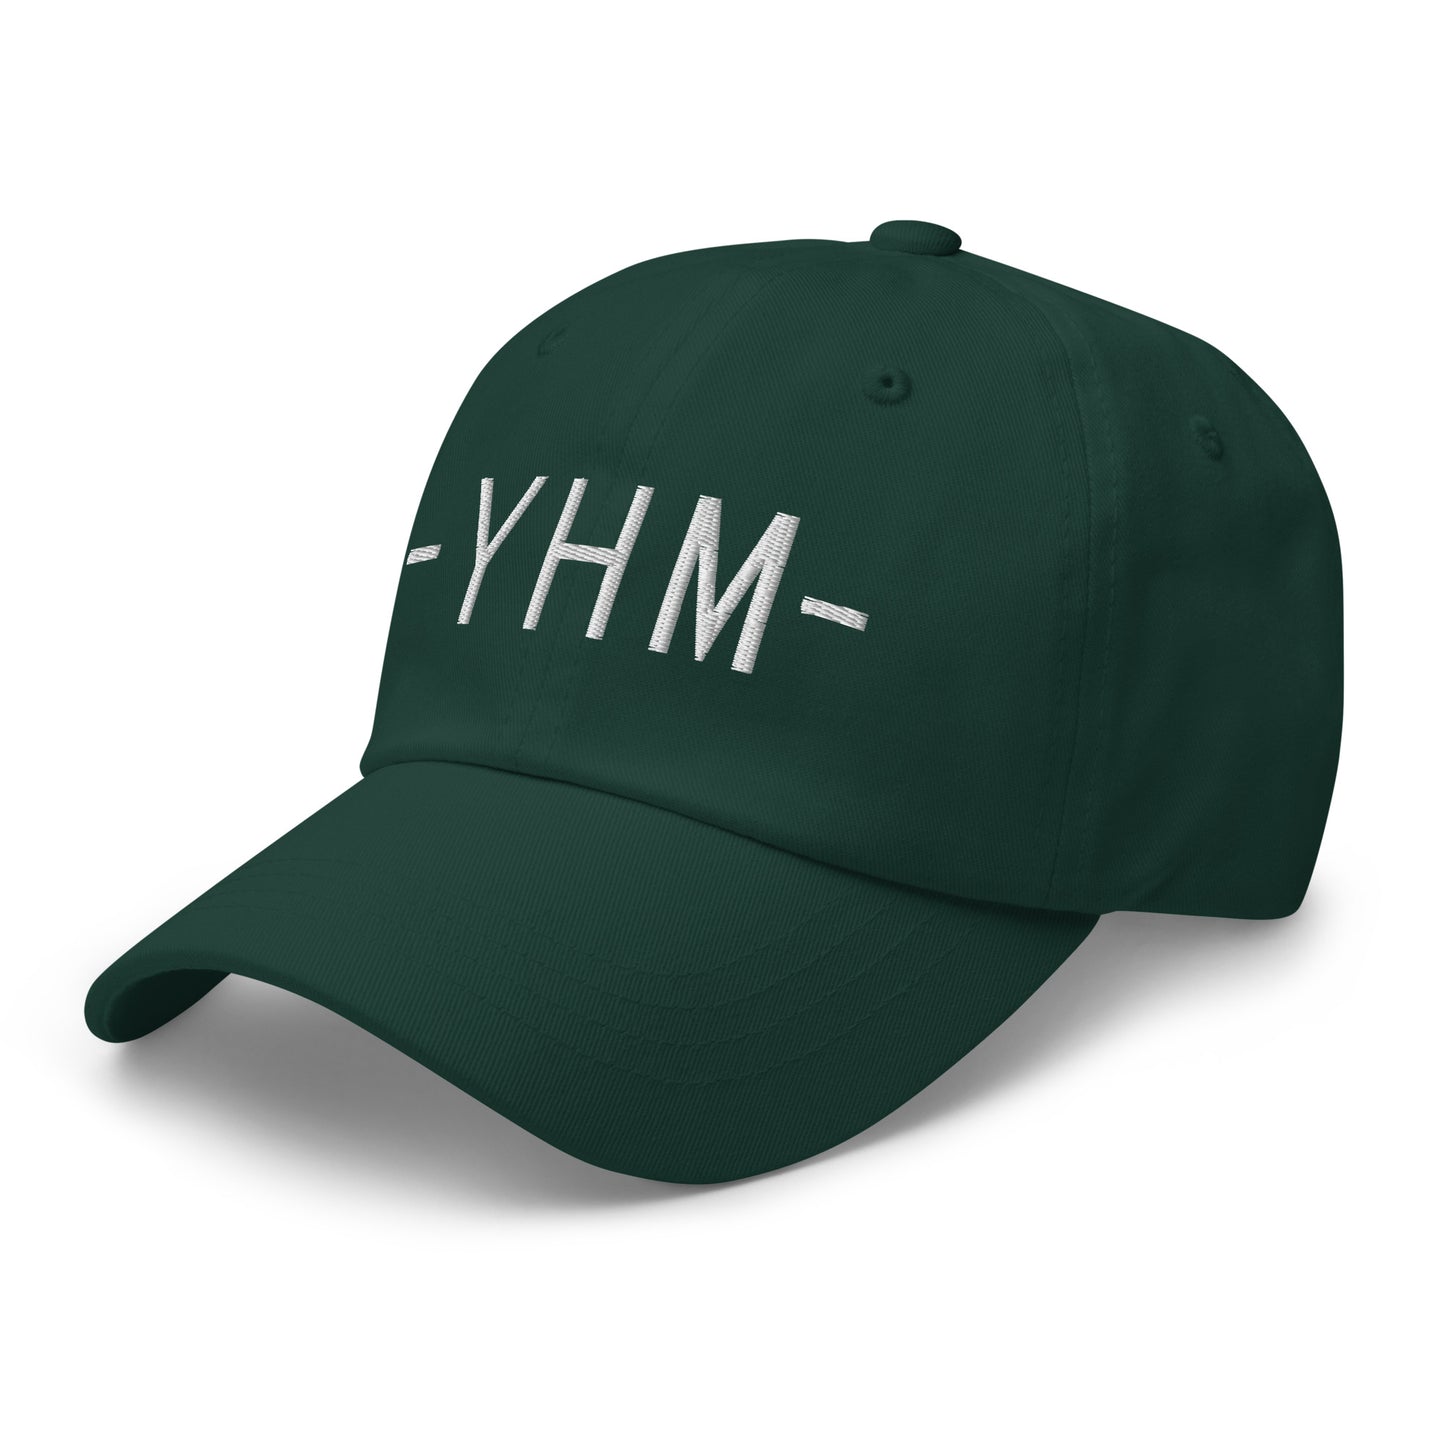 Souvenir Baseball Cap - White • YHM Hamilton • YHM Designs - Image 18